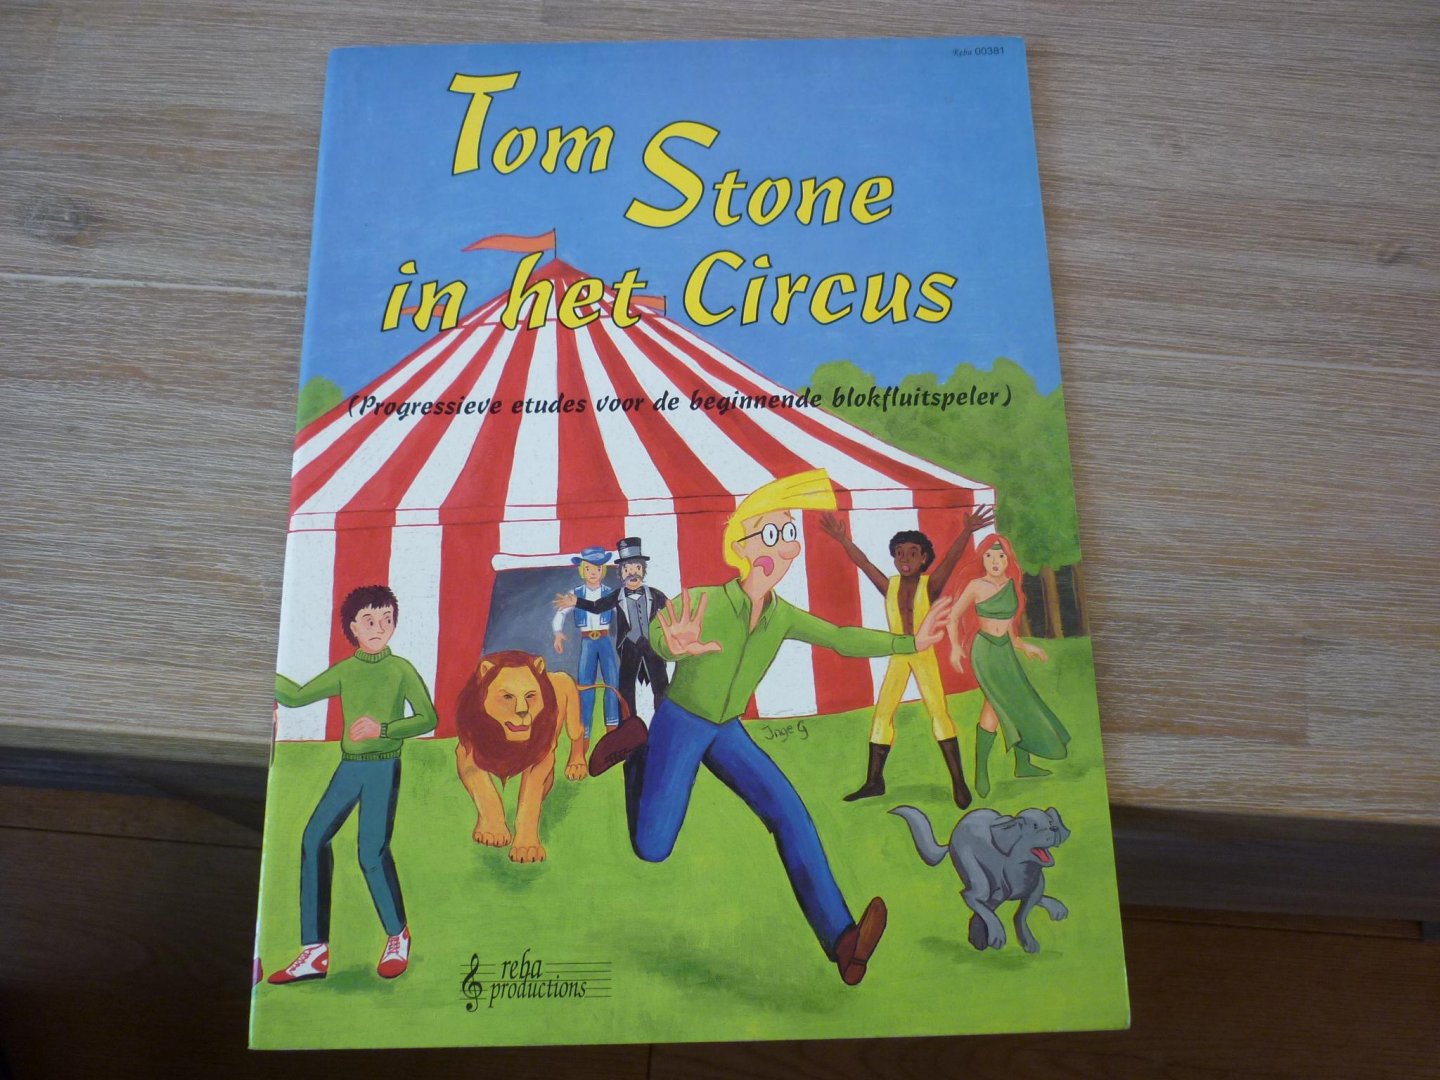 Stone; Tom - Tom Stone in het circus; progressieve etudes voor de beginnende blokfluitspeler